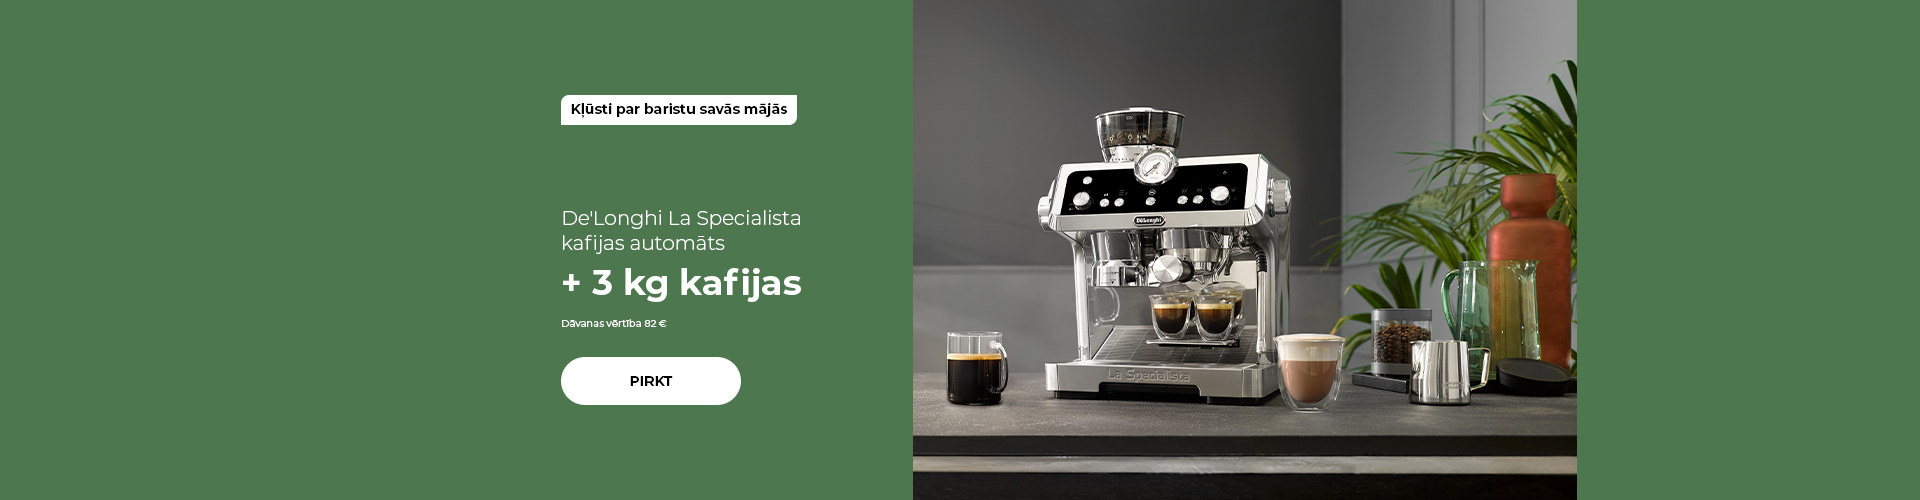 De'Longhi La Specialista kafijas automāts + 3 kg kafijas